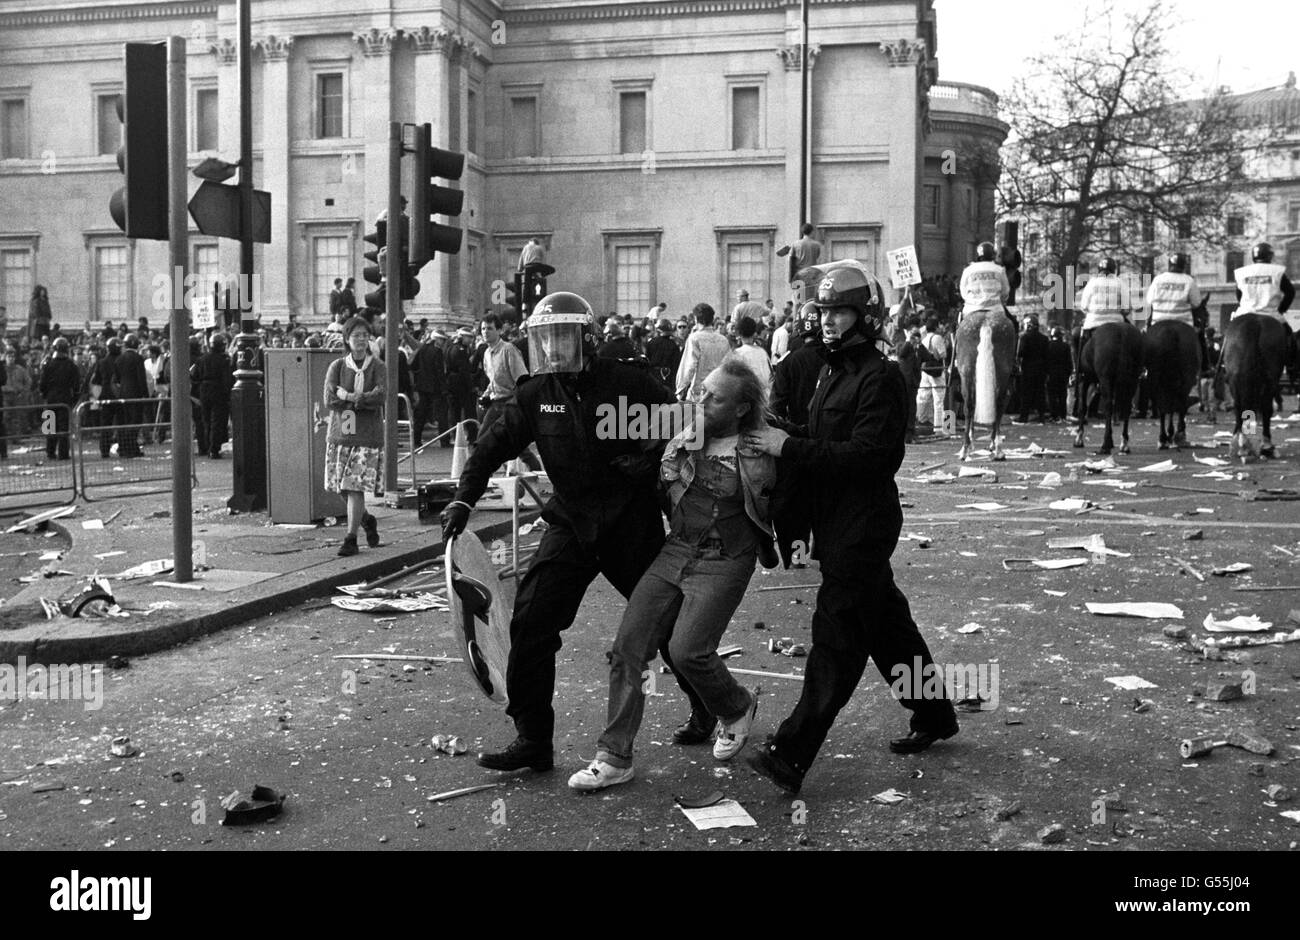 Polizeibeamte in Bereitschaftskleidung verhaften einen Protestierenden in der Nähe der National Gallery, Trafalgar Square, London, nachdem sich eine Demonstration gegen die Abgabensteuer zu einem Aufruhr entwickelt hatte. Berittene Offiziere können im Hintergrund gesehen werden, Blick auf Charing Cross Rd. Stockfoto